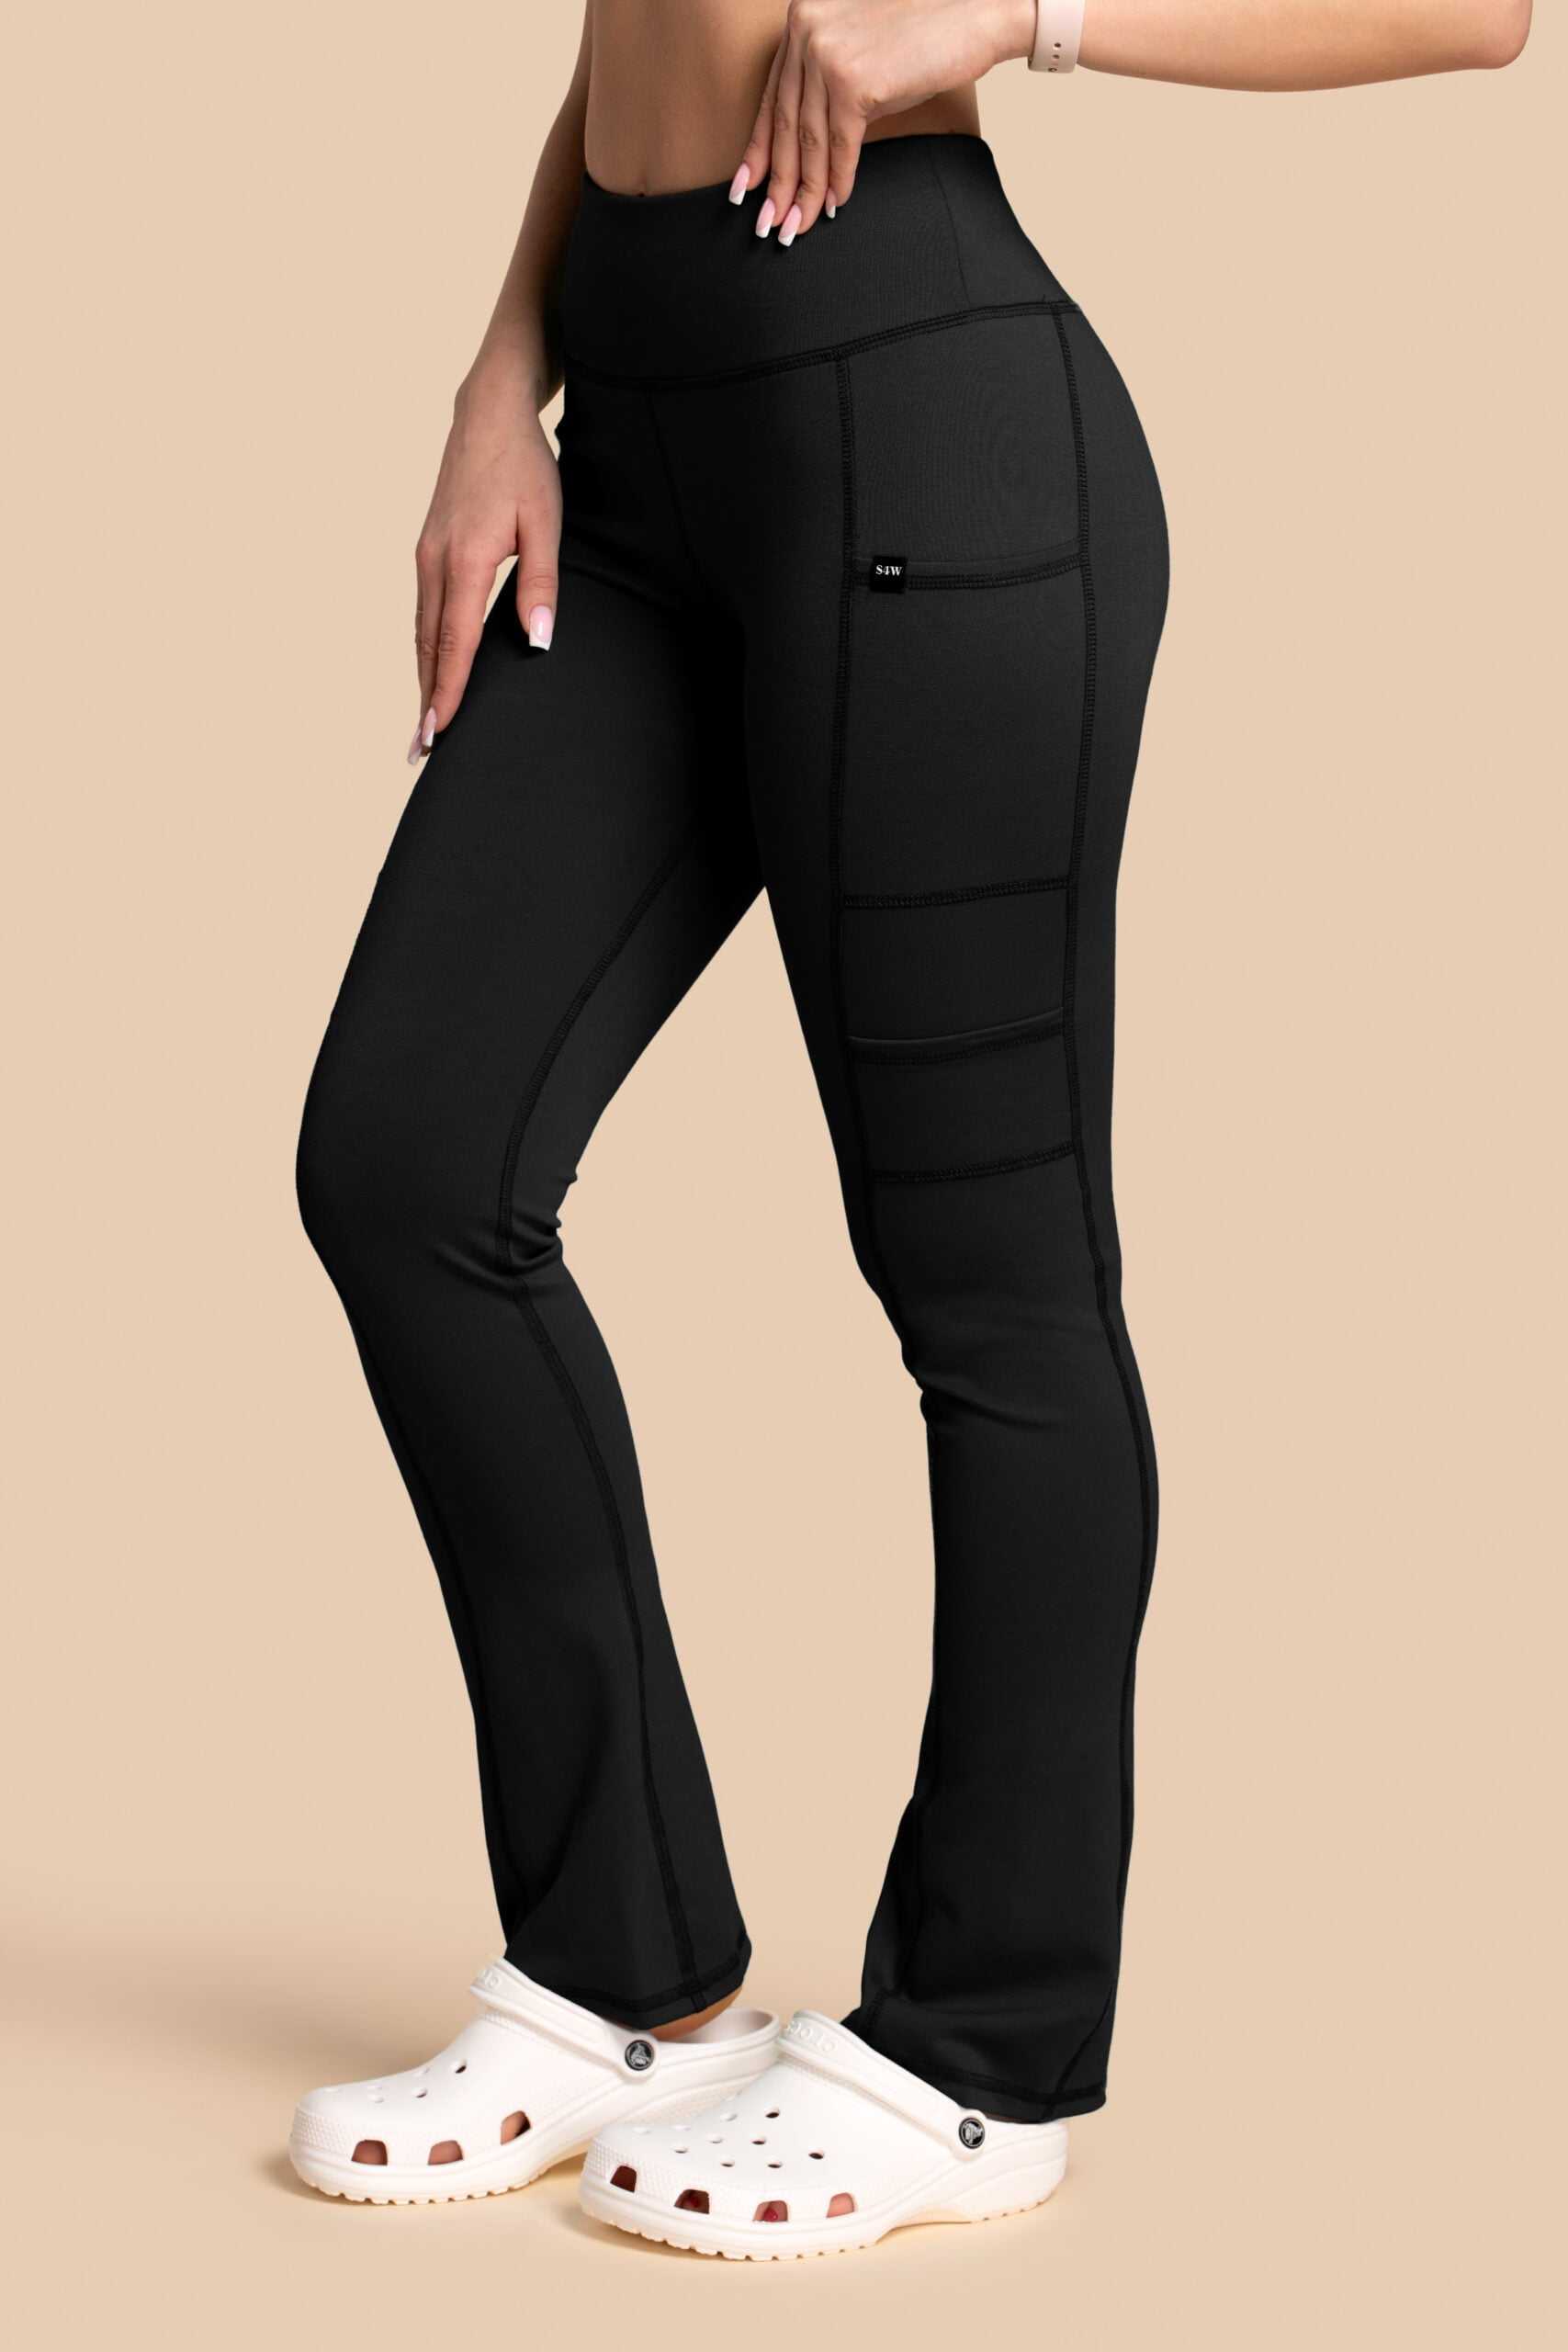 Spodnie medyczne damskie – Scrubs Yoga Pants czarne